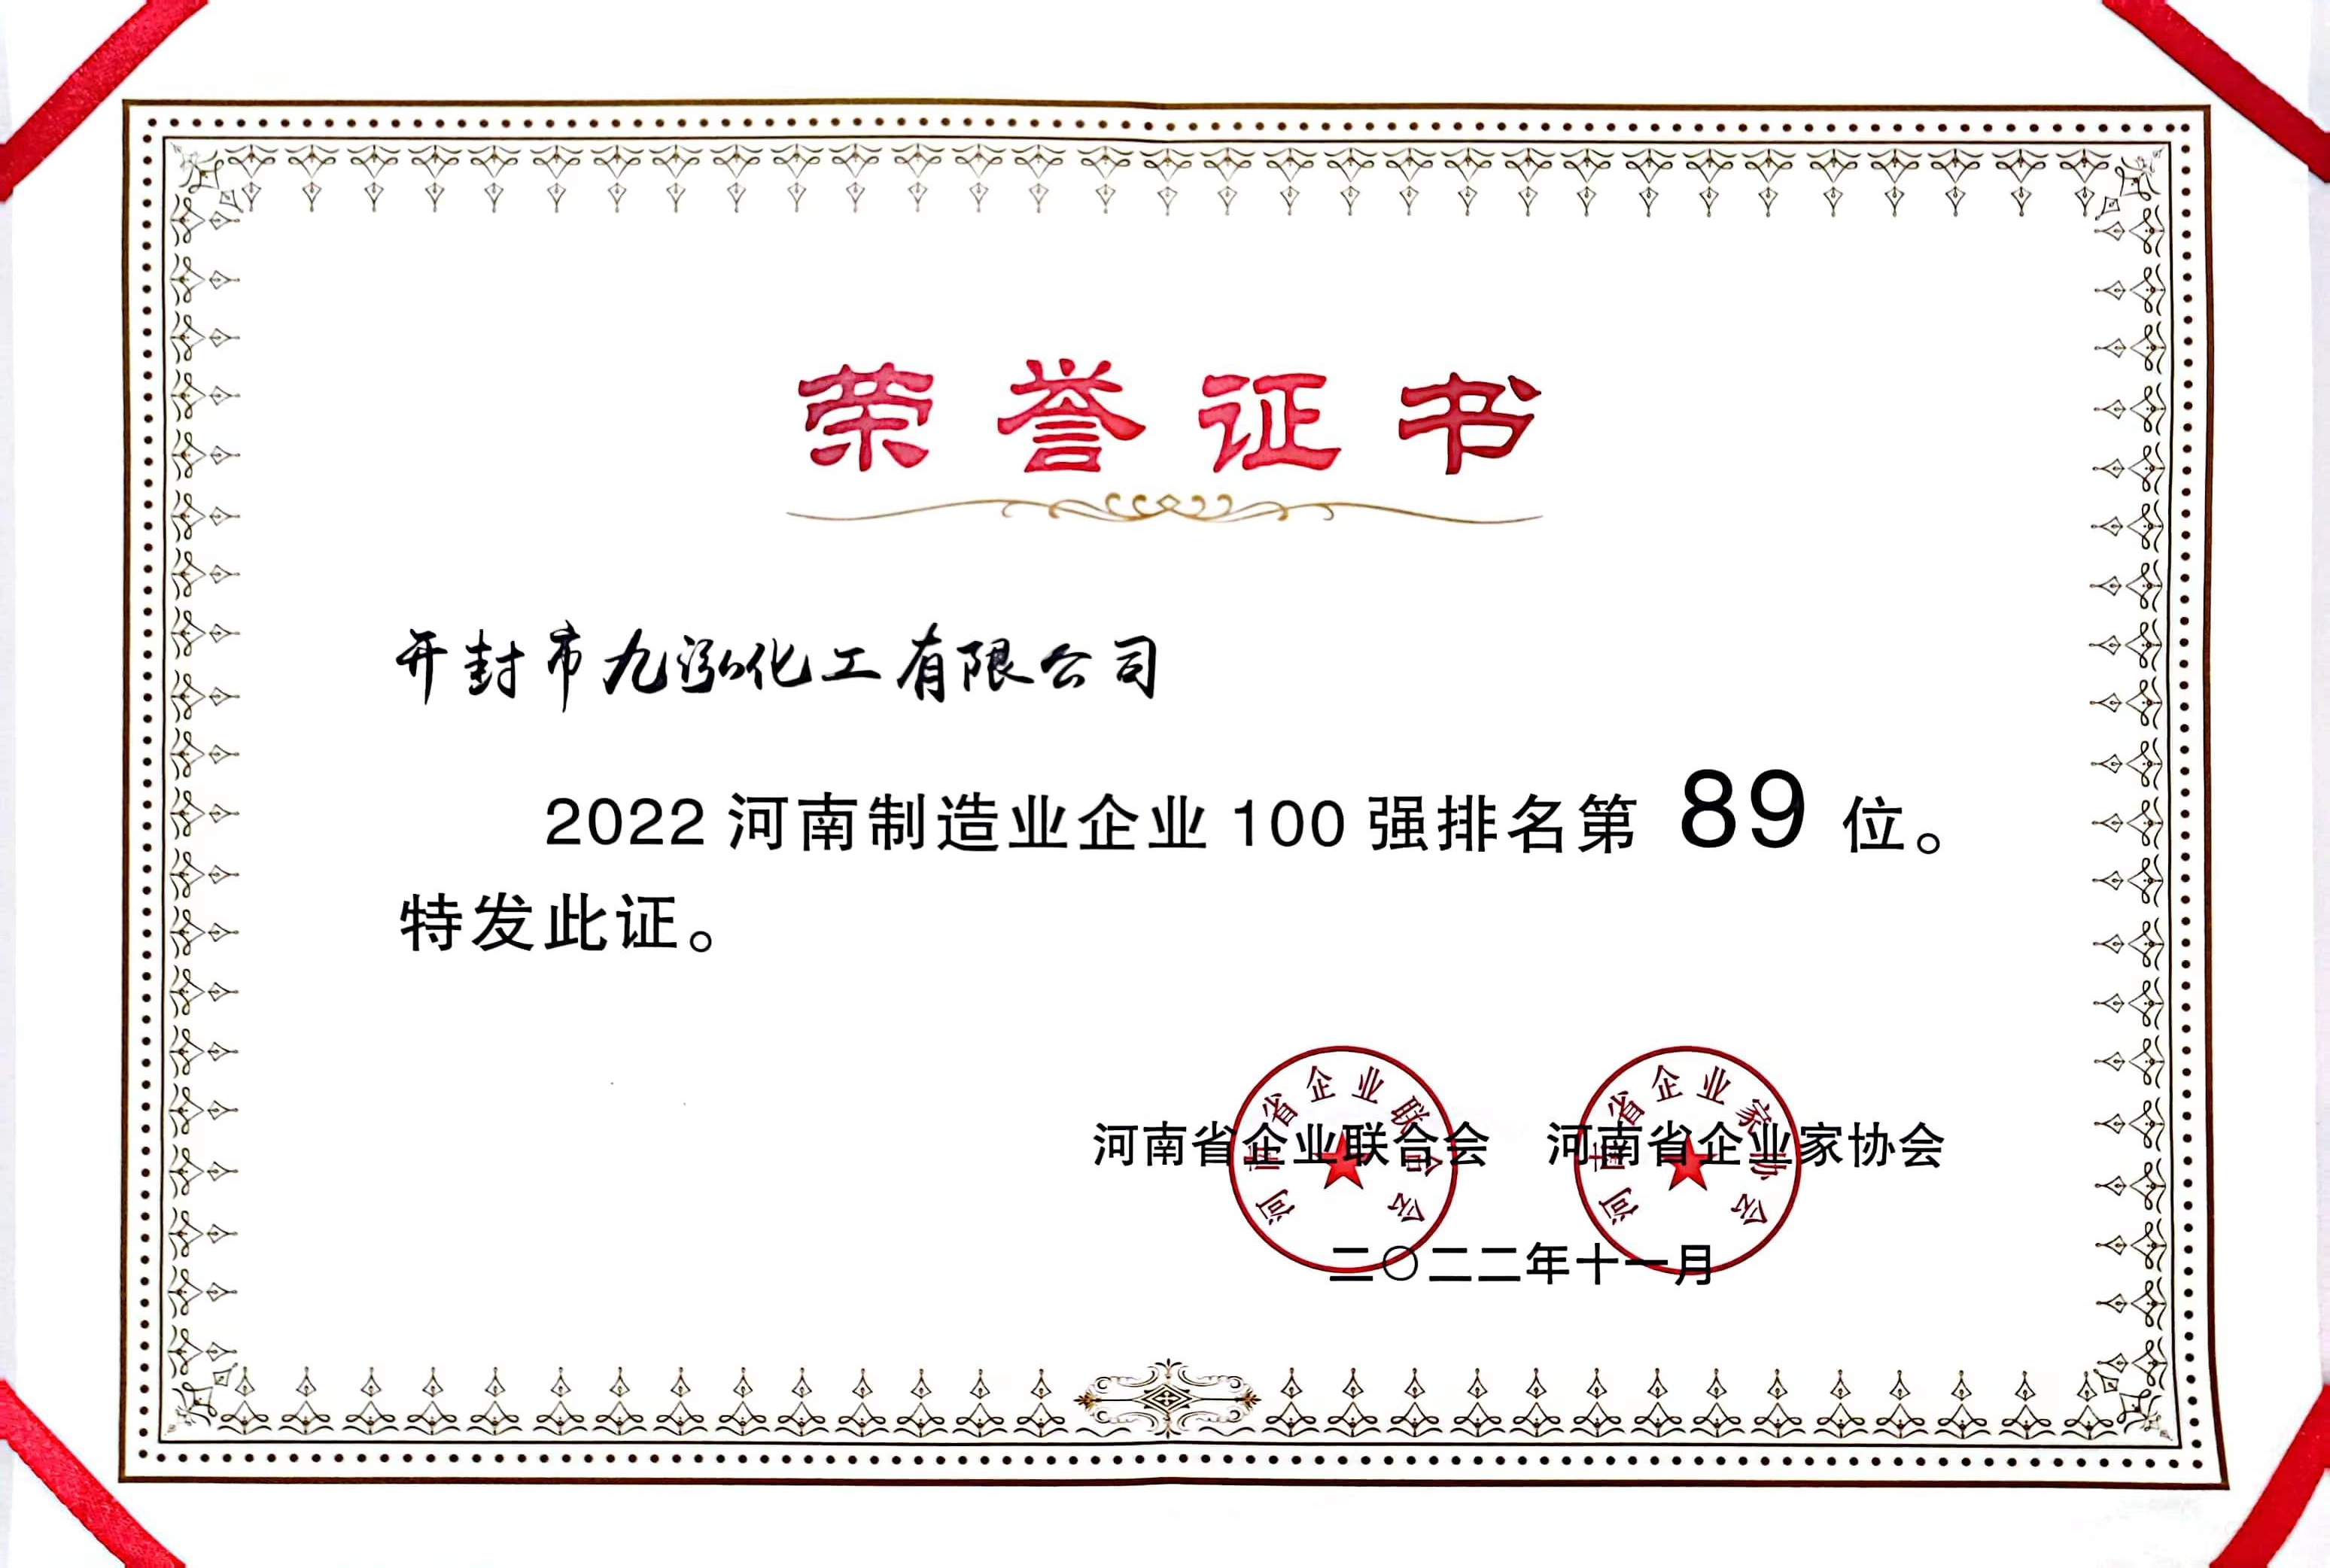 熱烈慶祝九泓化工榮登2022年度河南省制造業百強企業